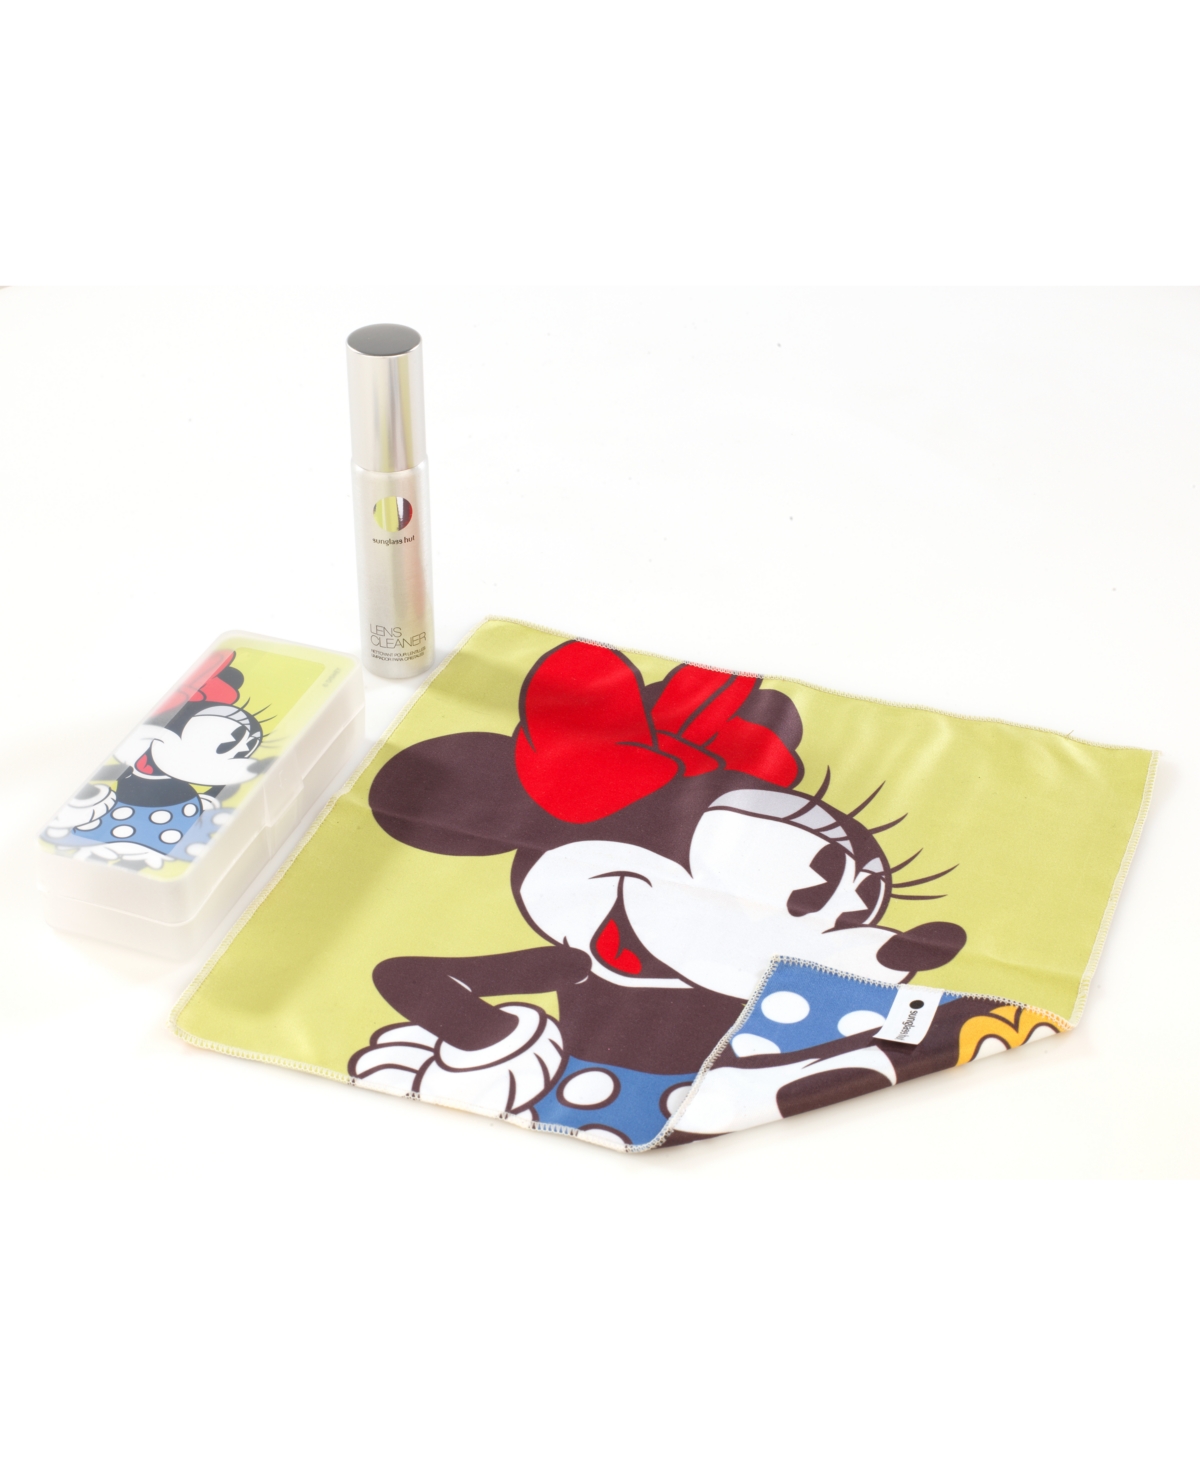 Sunglass Hut Disney Minnie Cleaning Kit, AHU0006CK - Multicolor